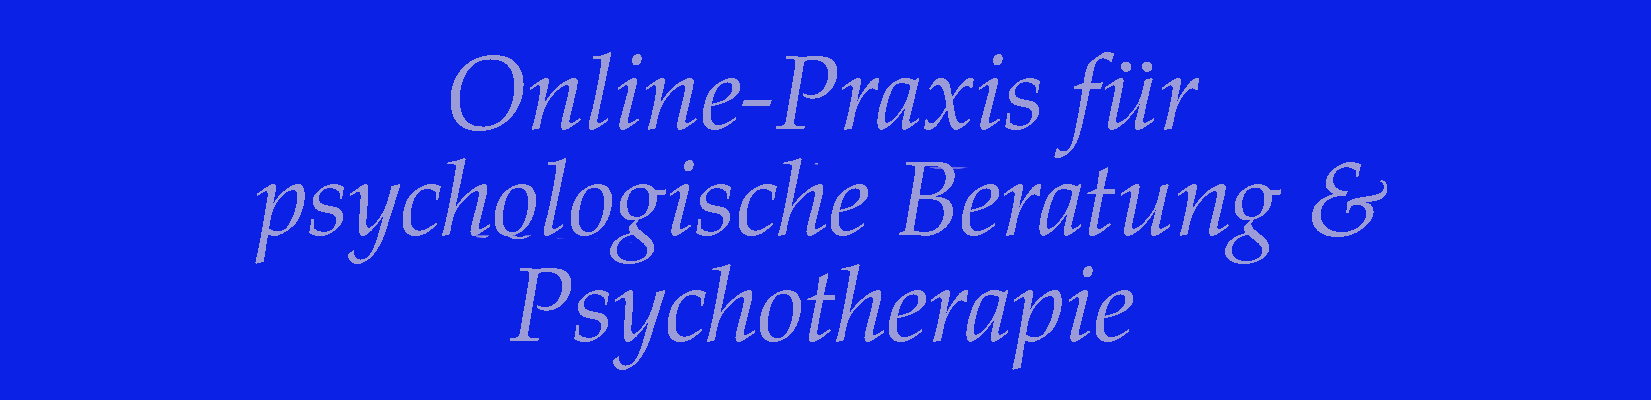 Psychotherapie Online-Praxis - Psychotherapie online - online Psychotherapie